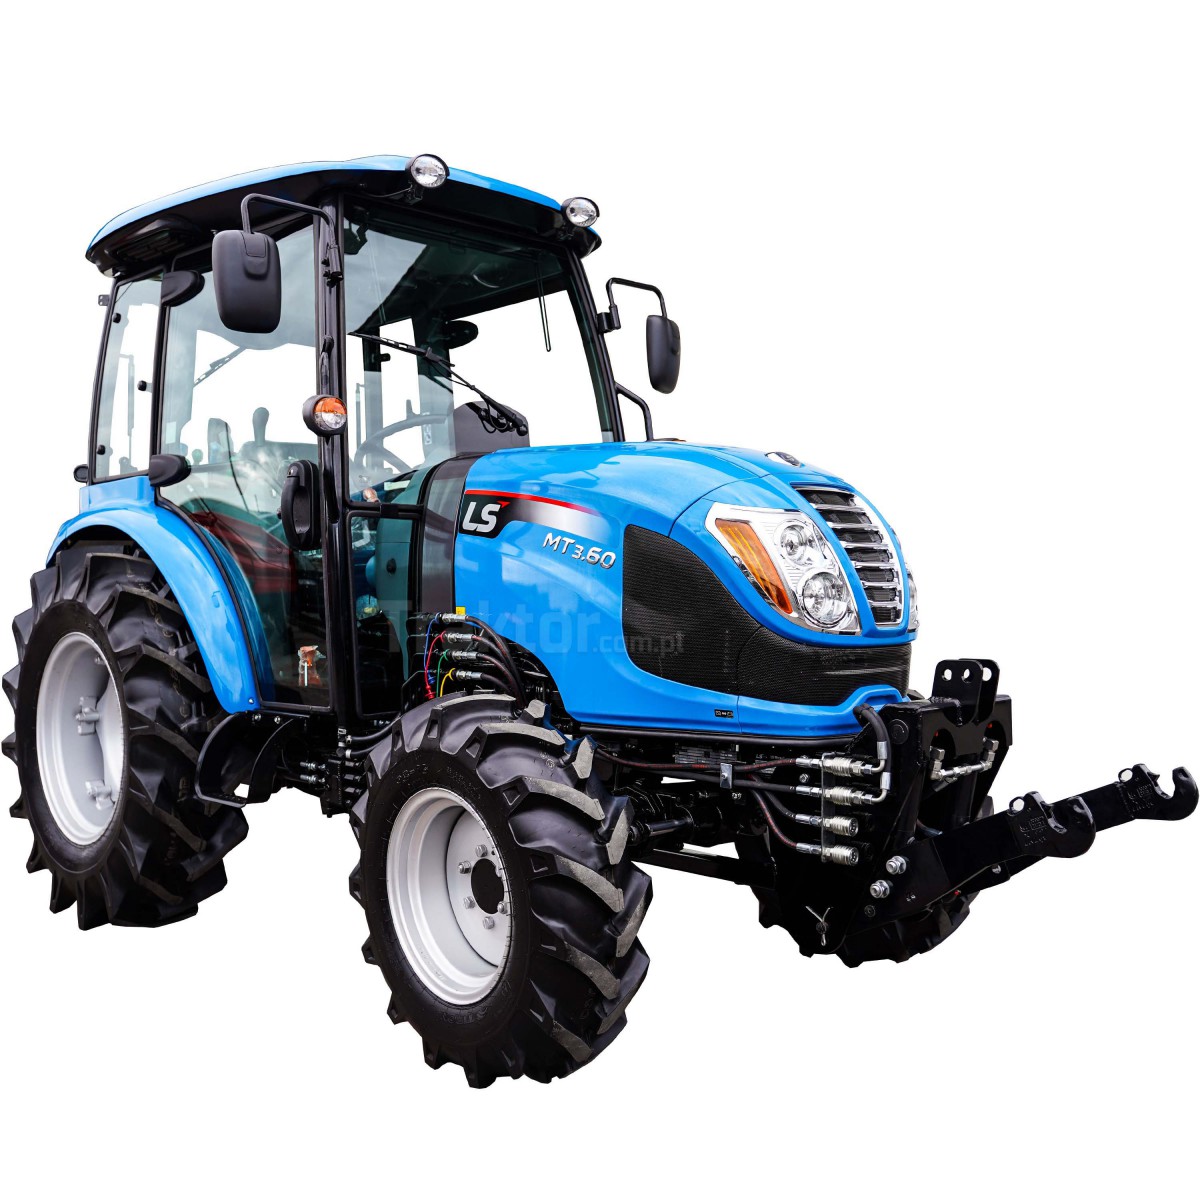 Tractor LS MT3.60 MEC 4x4 - 57 CV + elevador delantero Premium 4FARMER